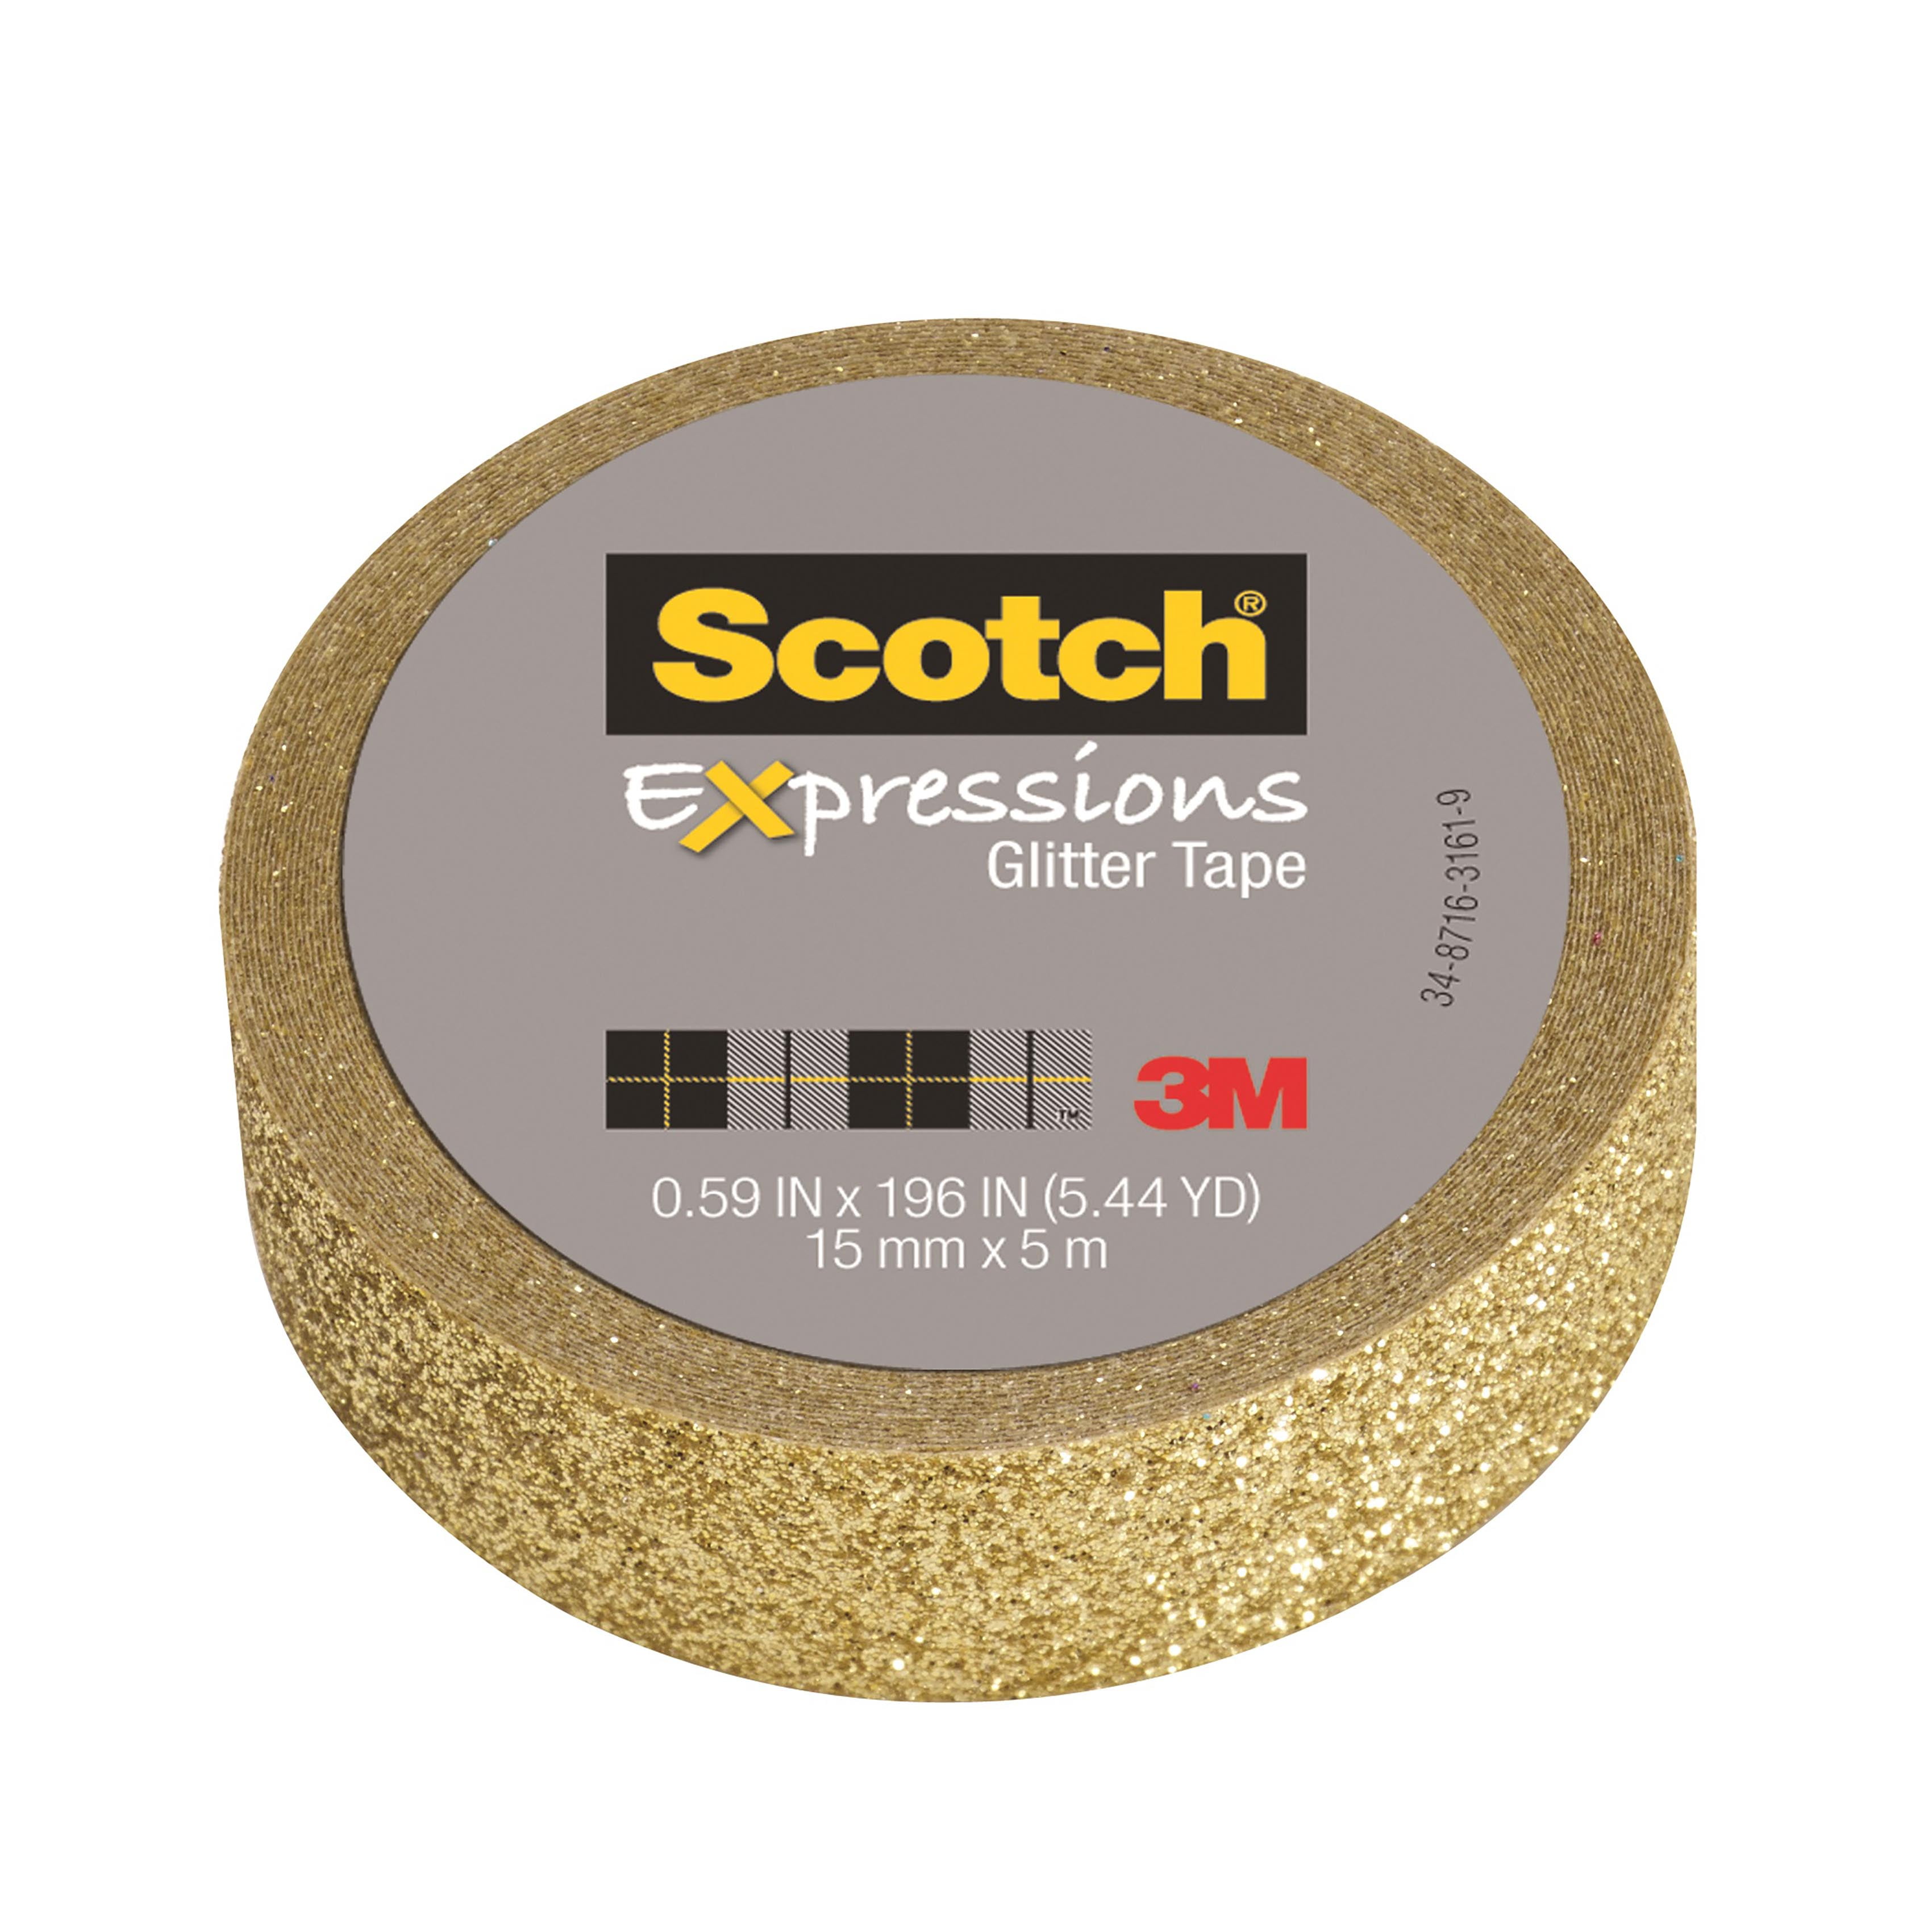 Scotch® Expressions Glitter Tape, .59 in x 196 in, White Glitter